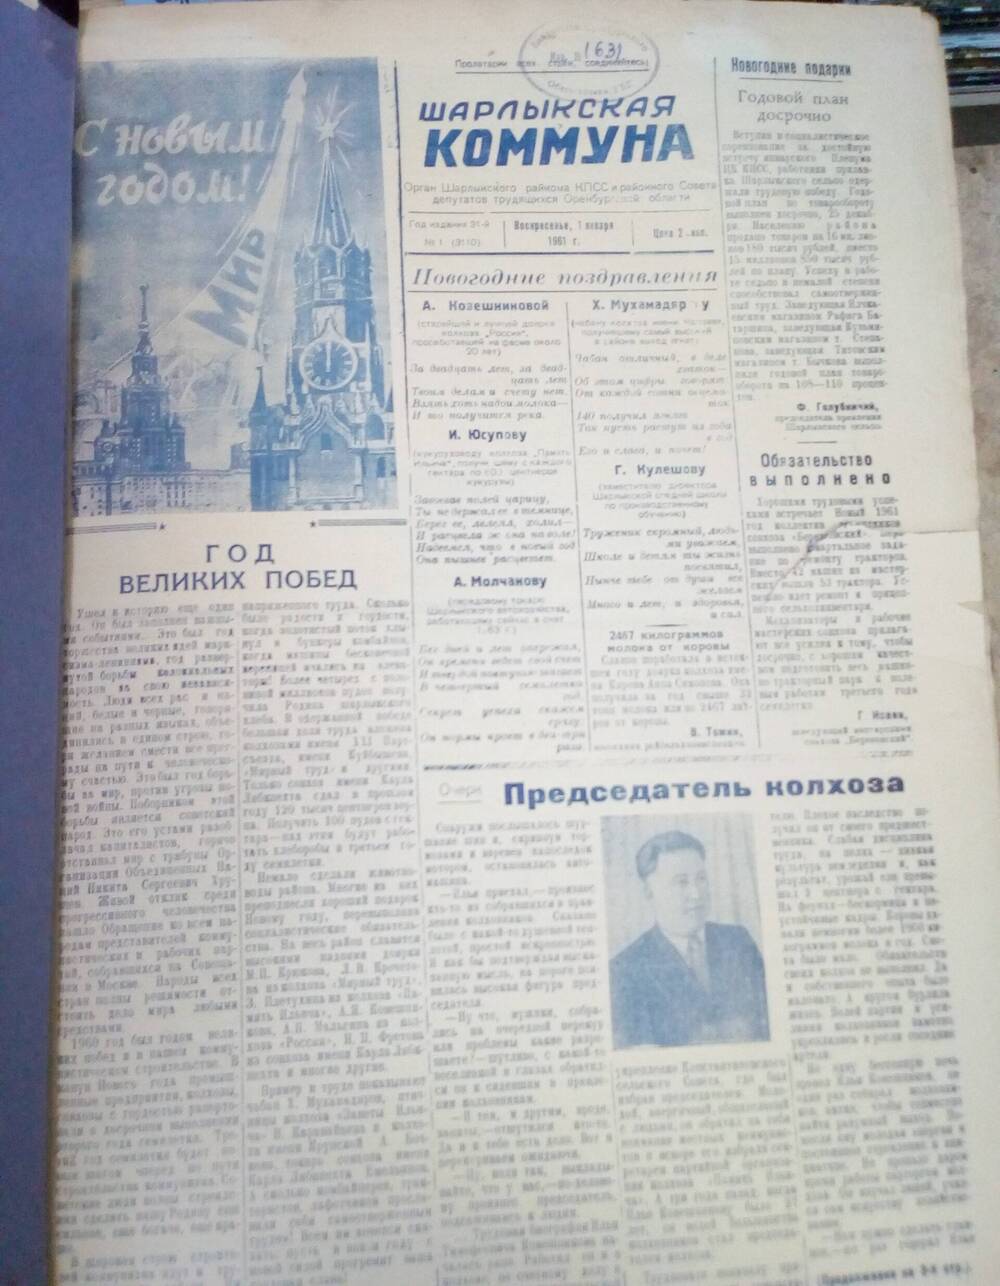 Подшивка газеты Шарлыкская коммуна за 1 полугодие 1961 г.